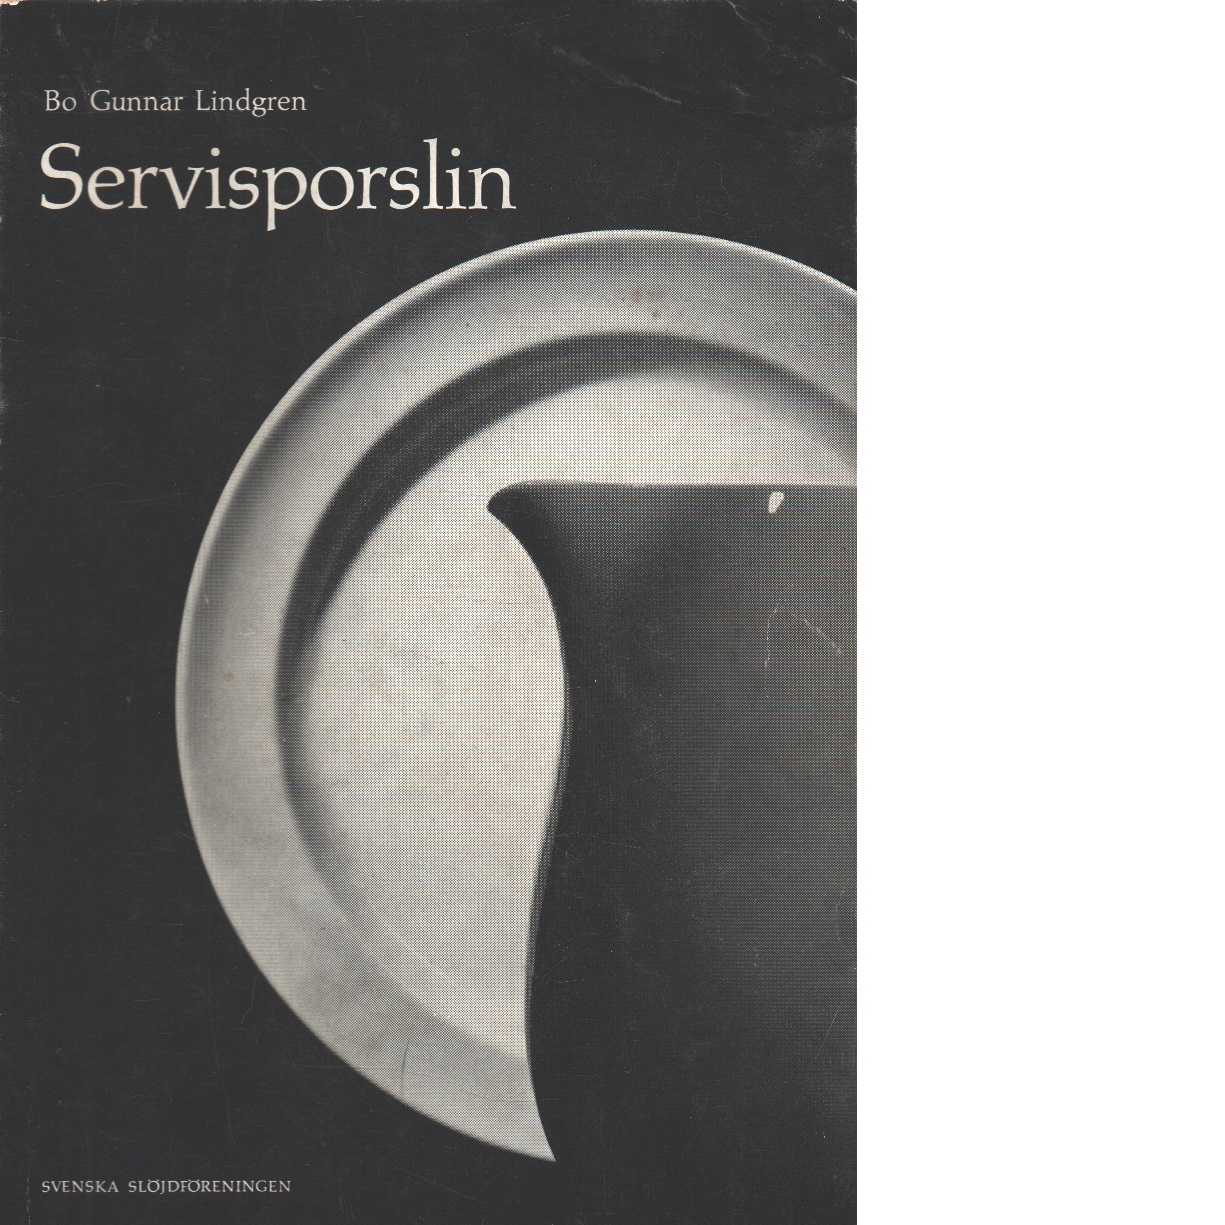 Servisporslin - Lindgren, Bo Gunnar